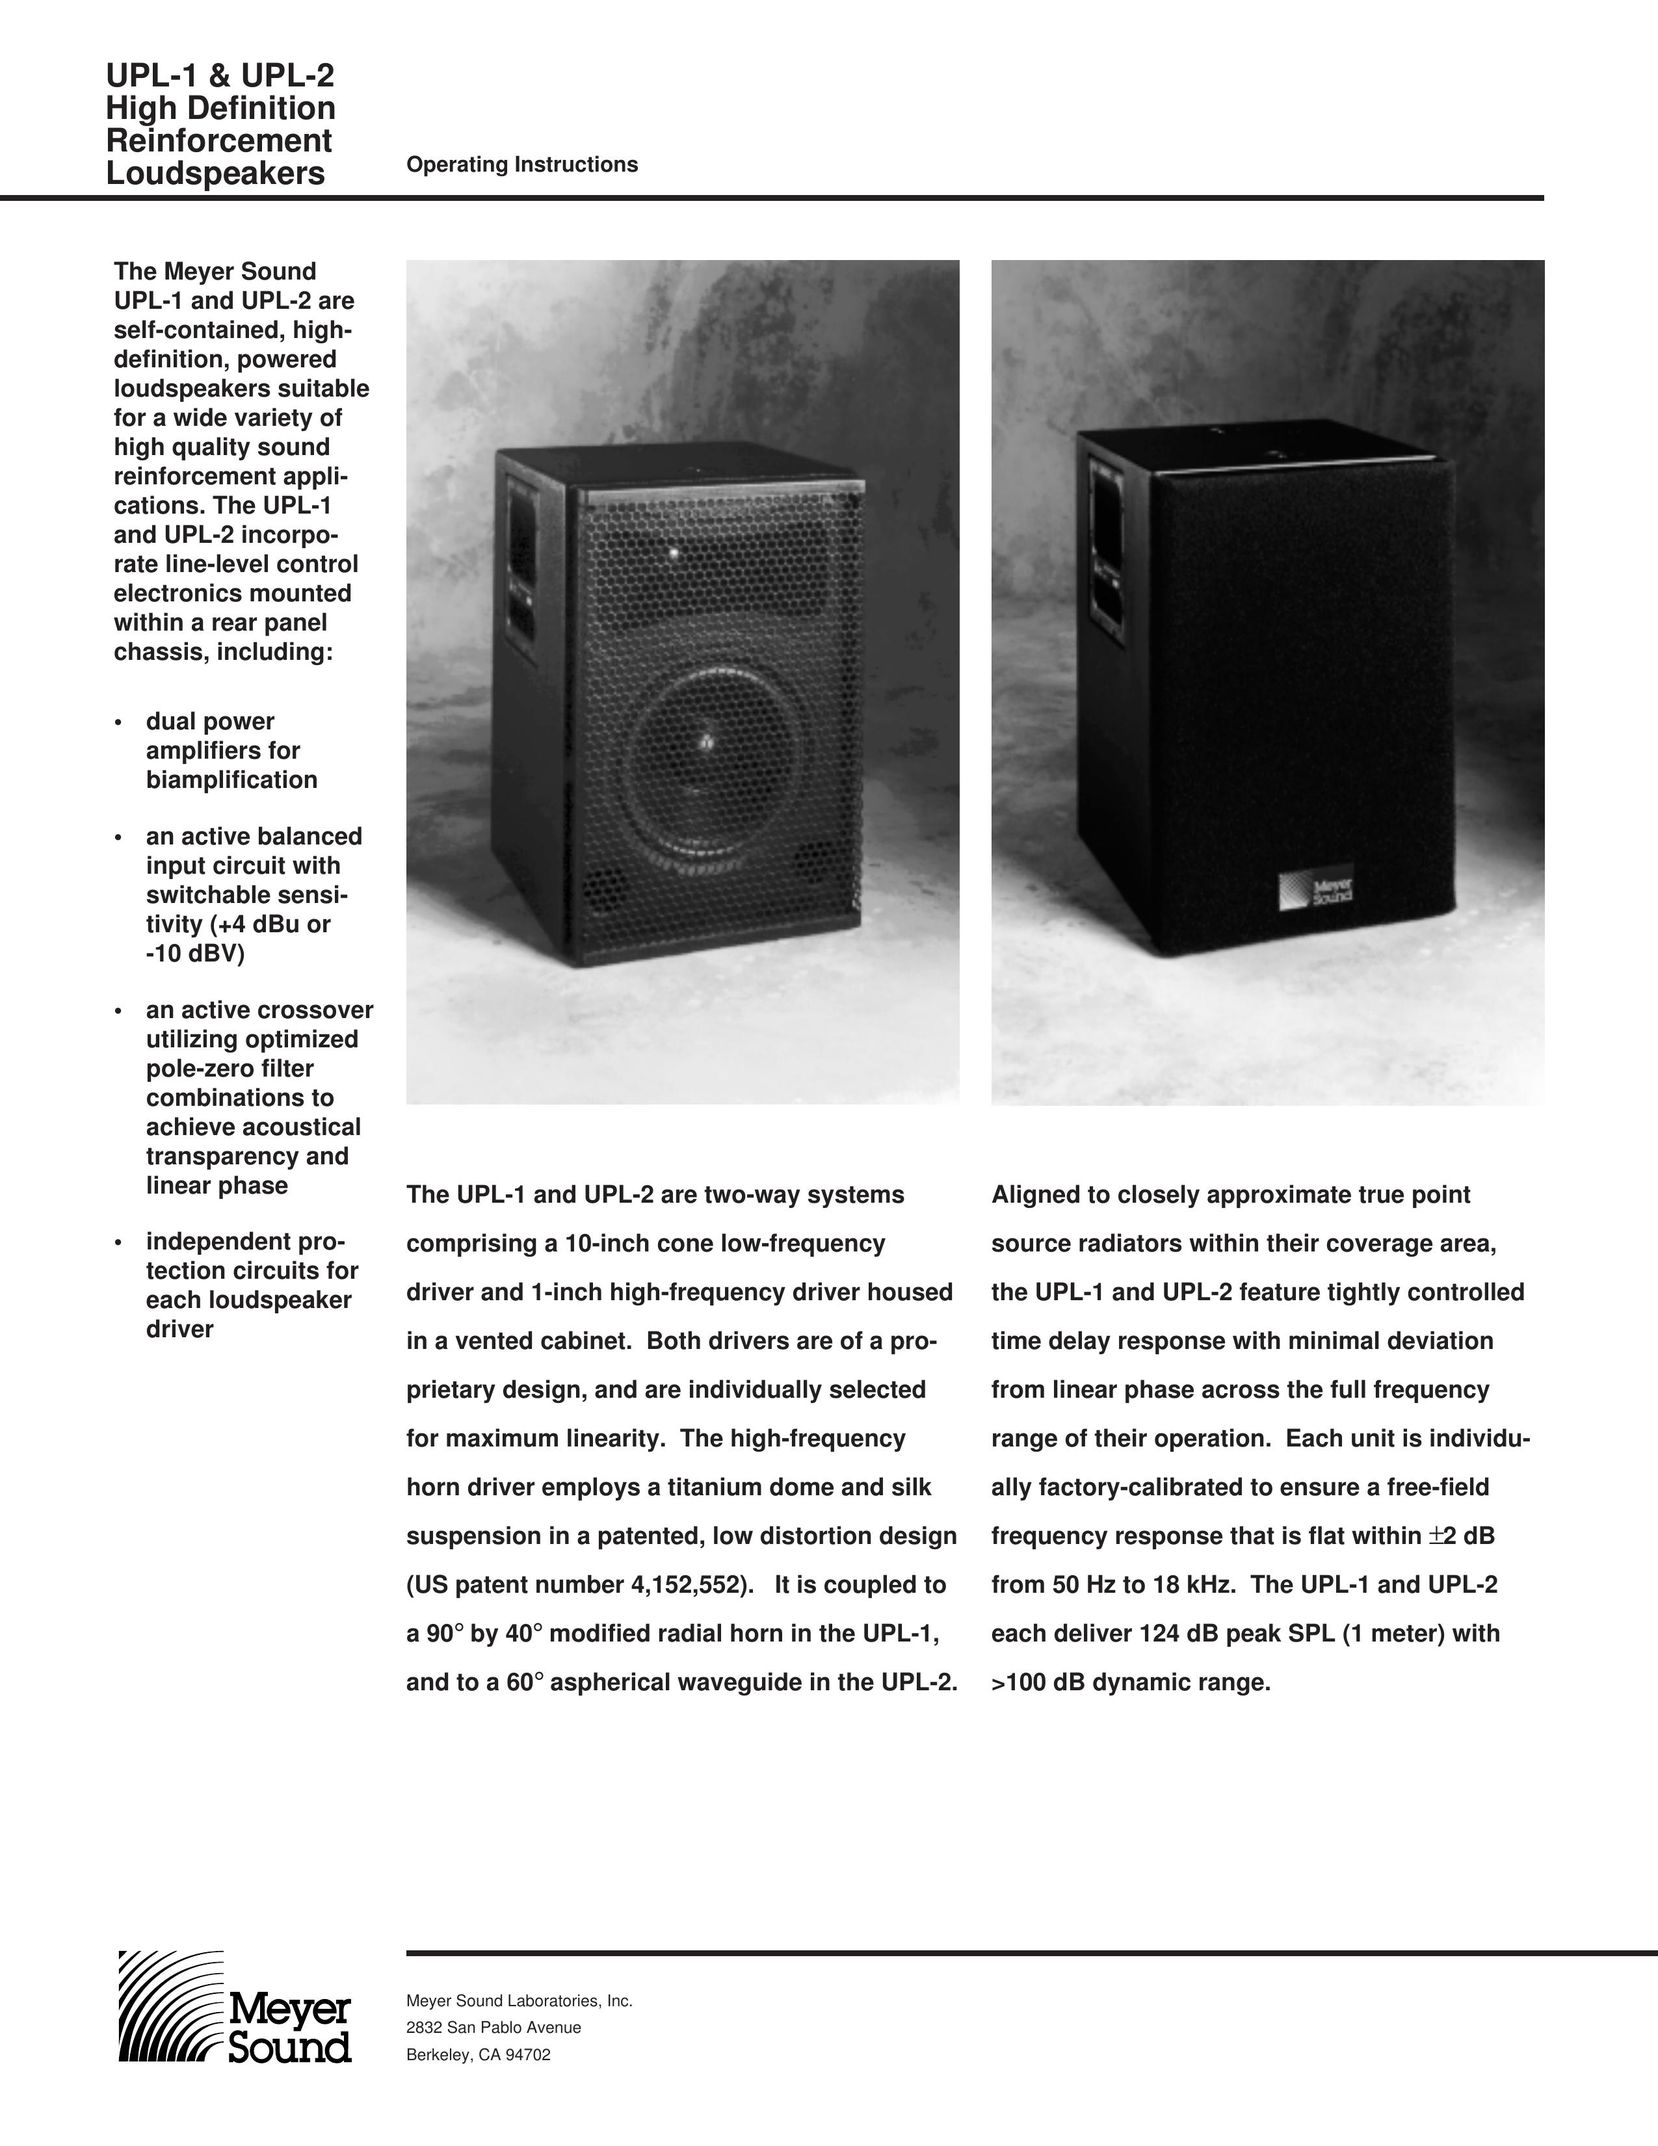 Meyer Sound UPL-1 Car Speaker User Manual